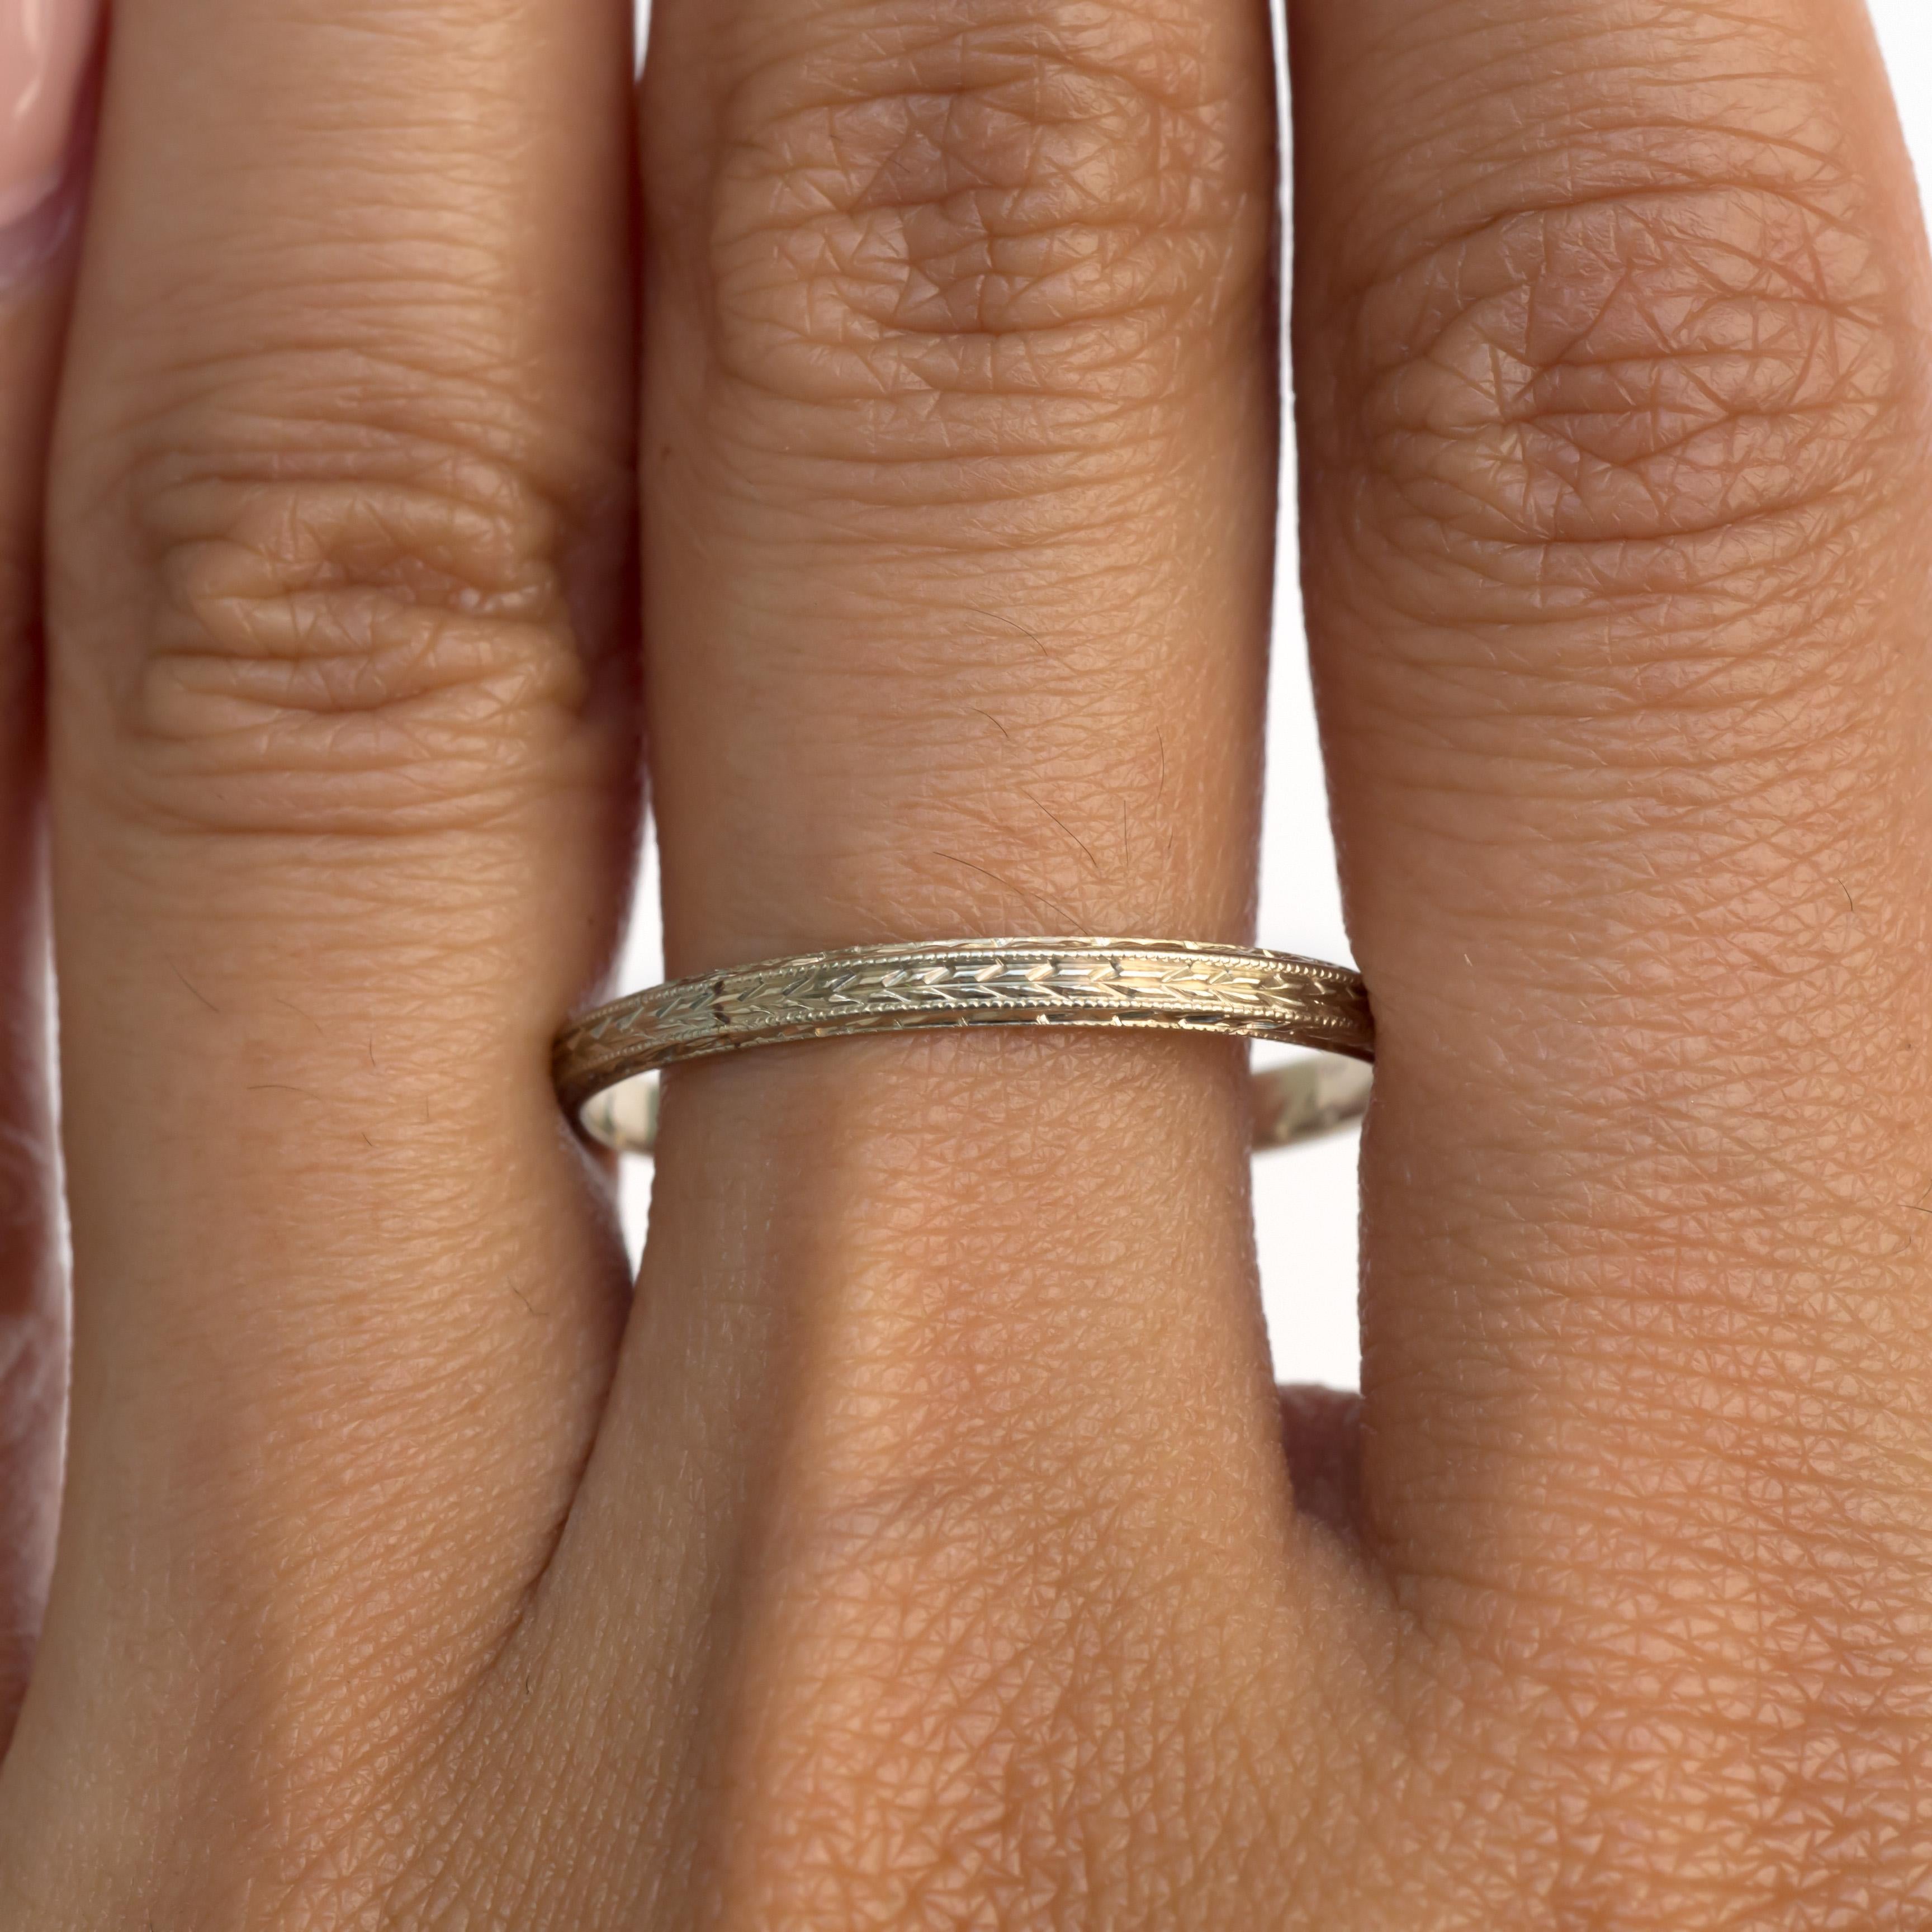 Ringgröße: 11
Metall Typ: 14 Karat Weißgold 
Gewicht: 1,9 Gramm

Finger bis zur Oberkante des Steins messen: 1.36mm
Breite: 2,33 mm
